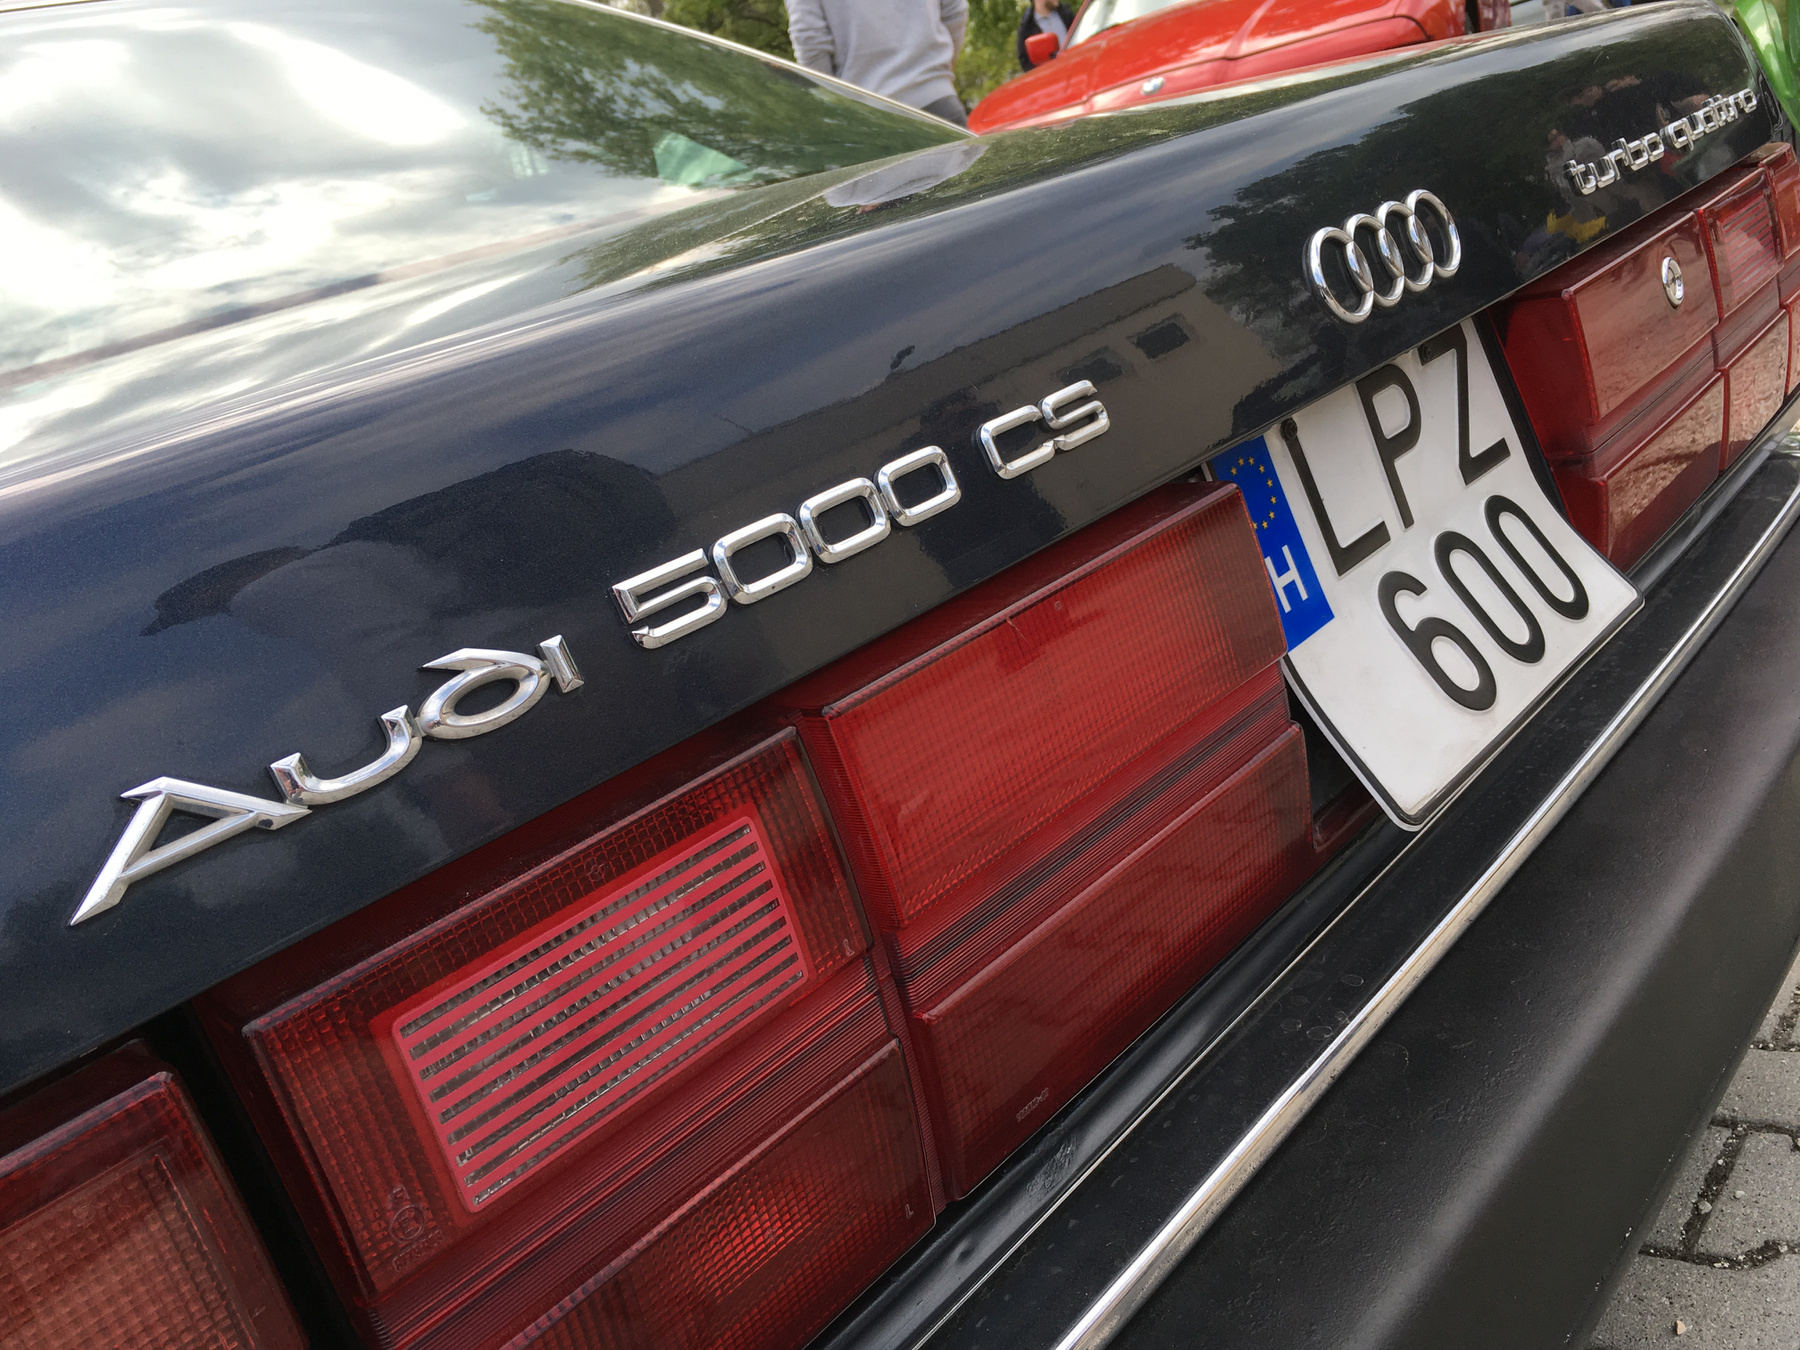 Az Audi 5000 CS Turbo Quattro csak a jenki piacra készült. És mekkora szerencse, hogy jó széles autó, így csak kicsit lett zsúfolt a csomagtartó a feliratoktól. Igen, ez így gyári